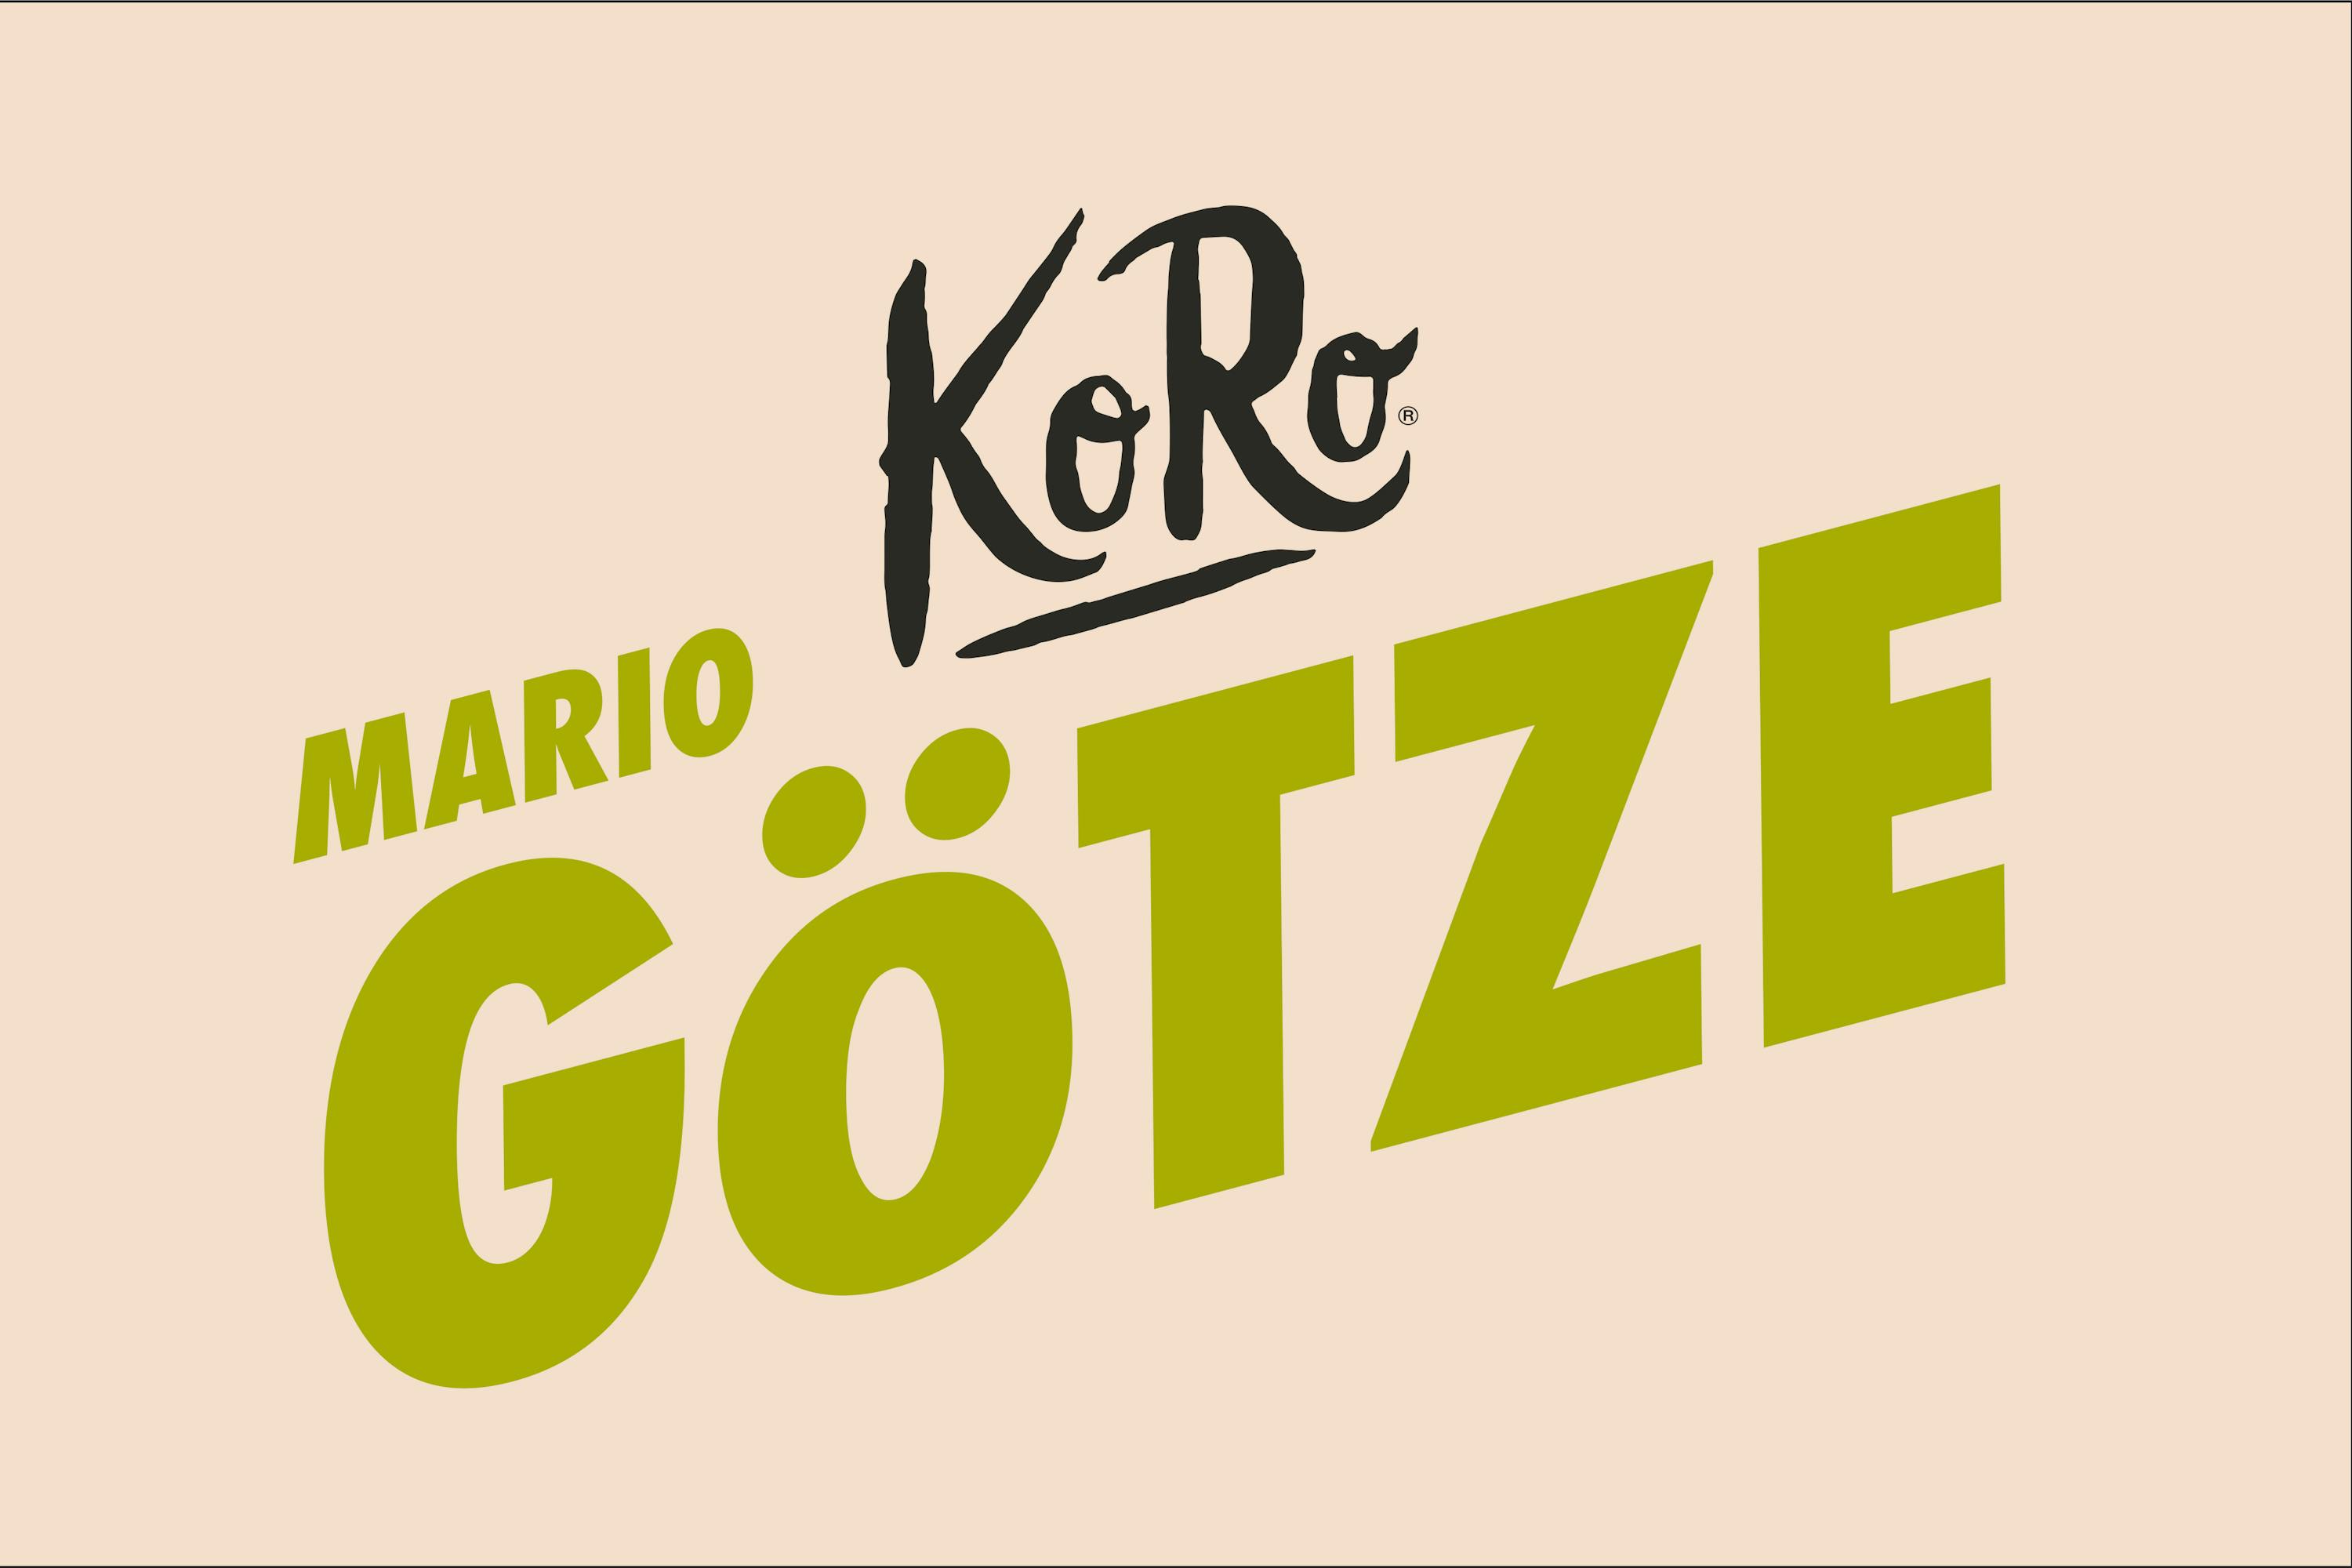 KoRo x Mario Götze: This pistachio wafer kicks differently